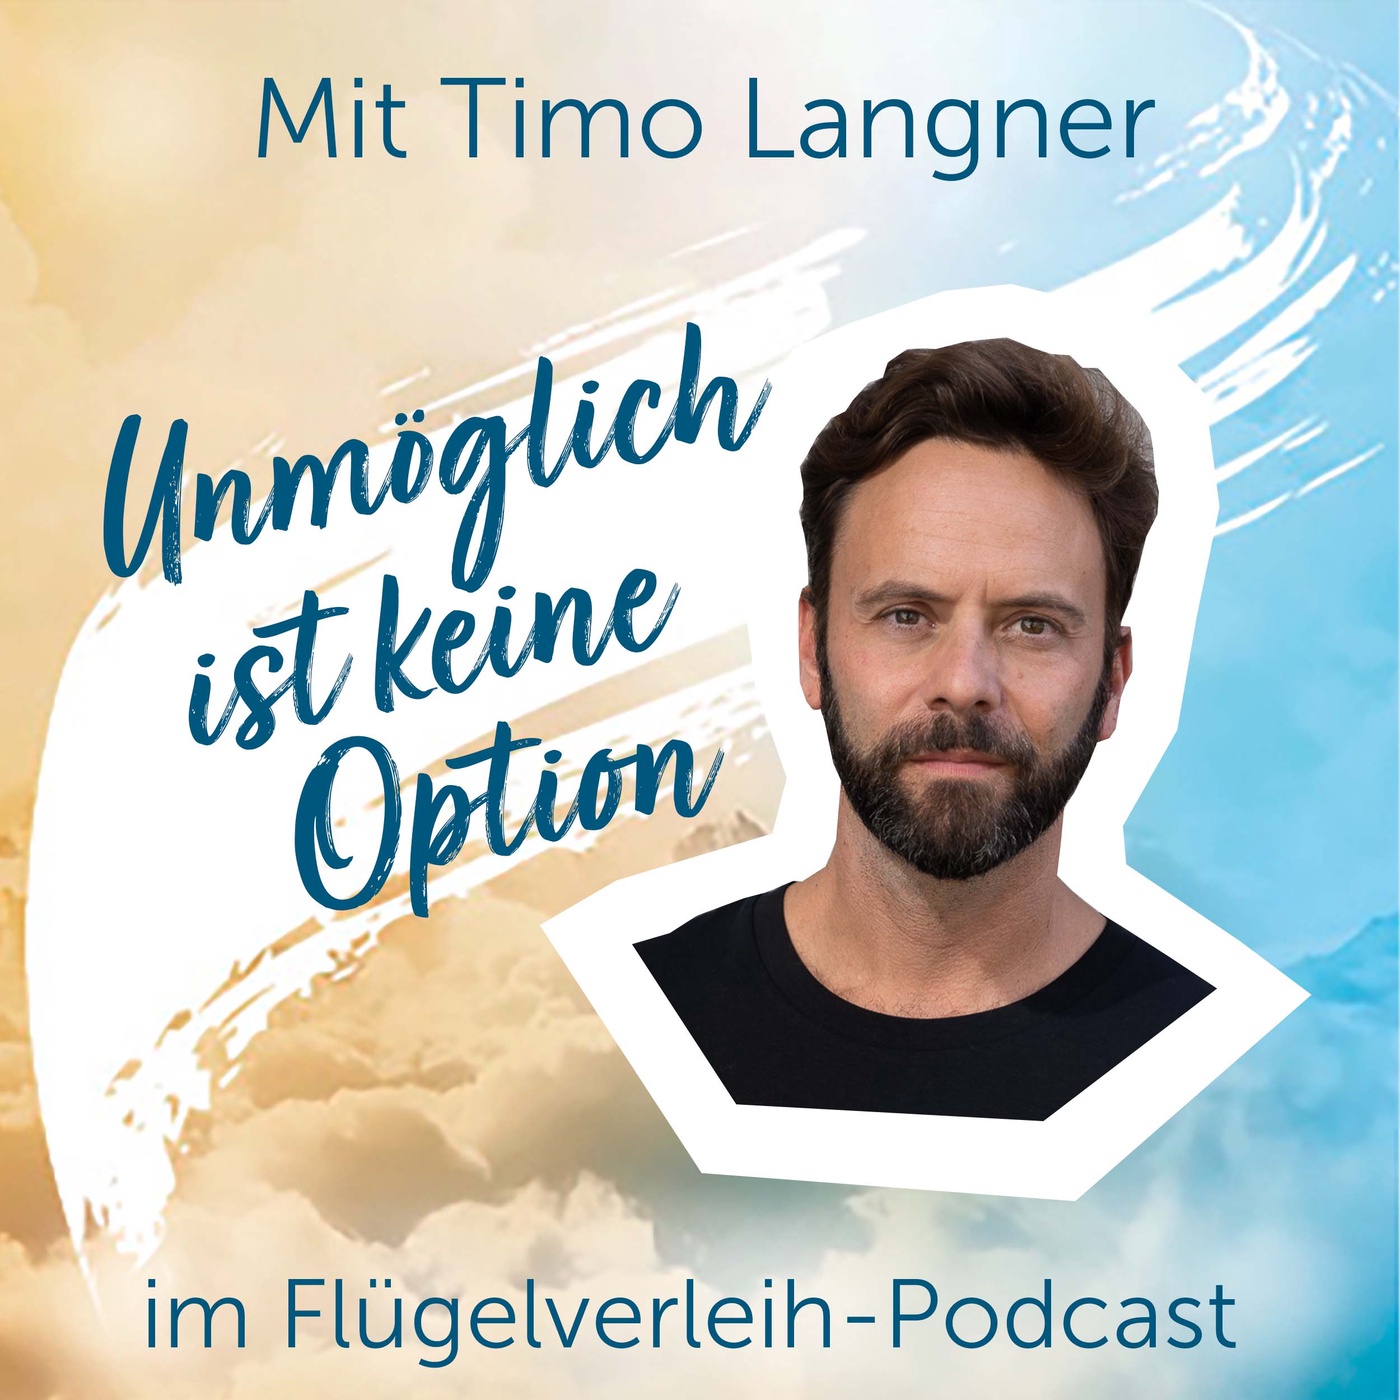 Unmöglich ist keine Option - mit Timo Langner